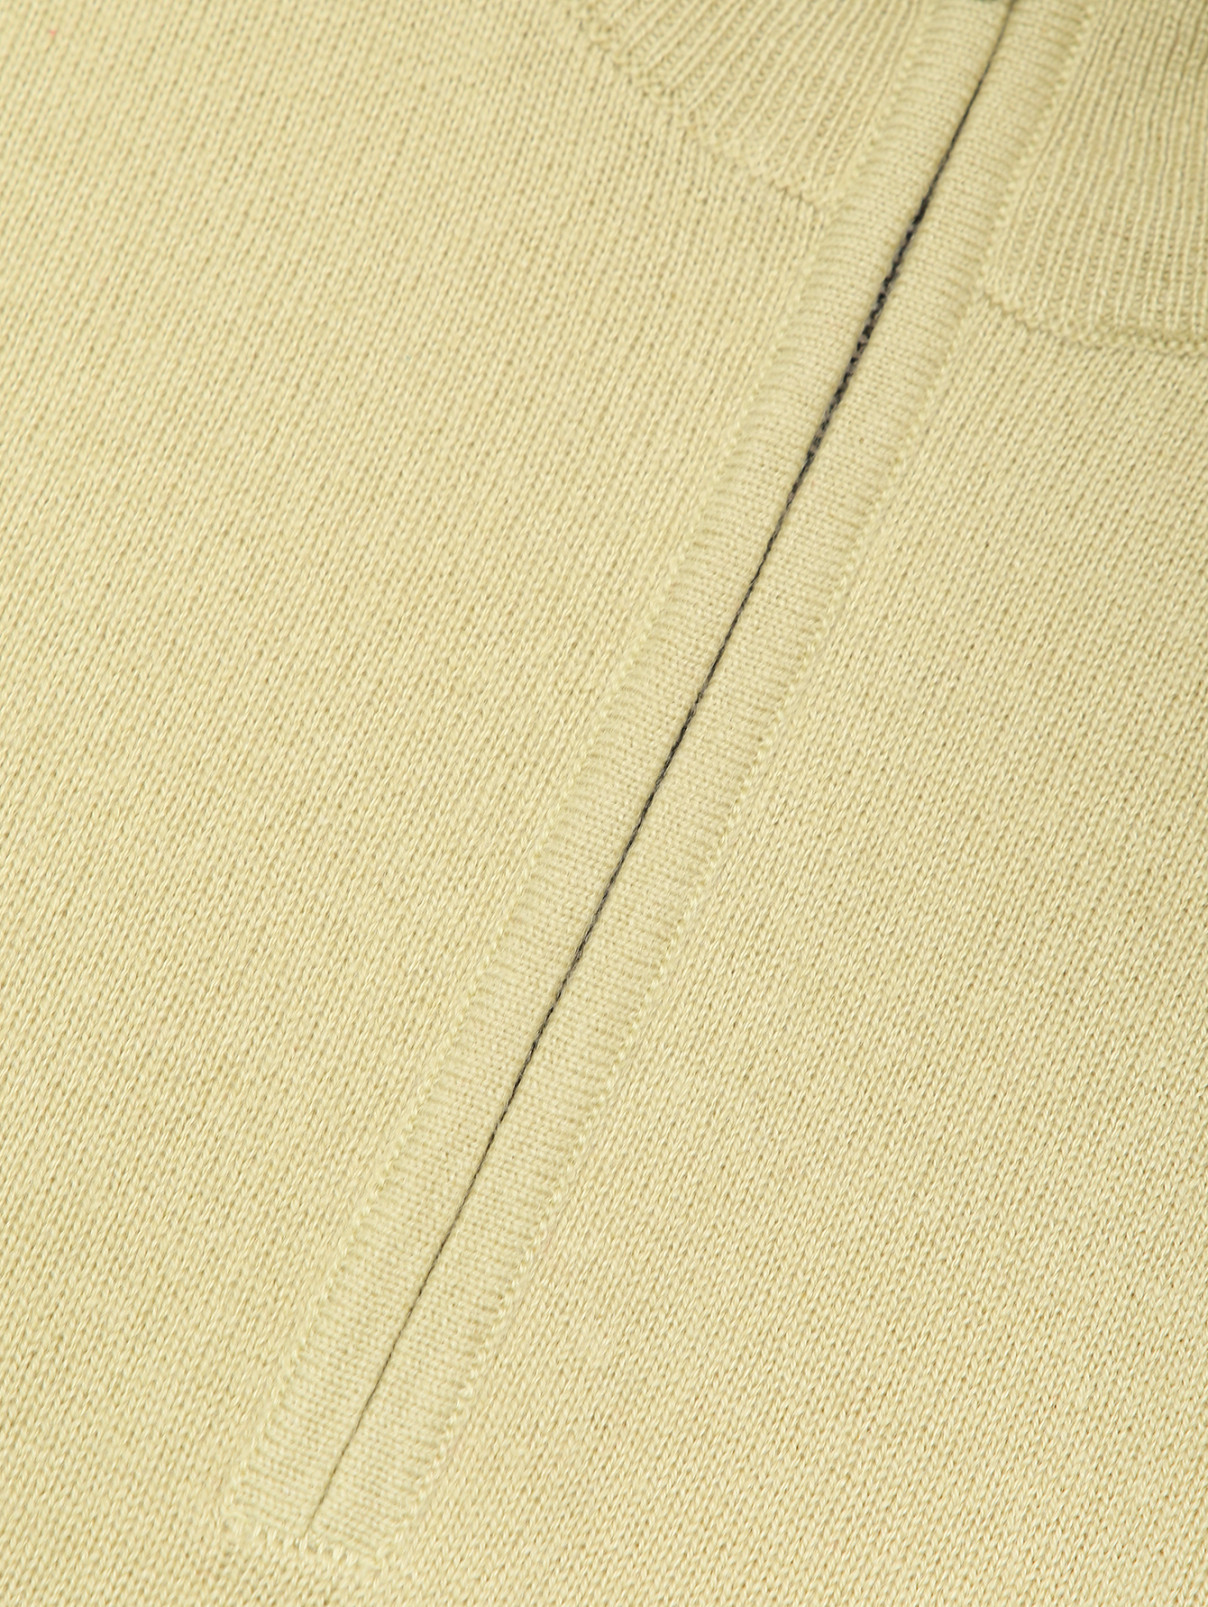 Джемпер из кашемира на молнии Piacenza Cashmere  –  Деталь  – Цвет:  Зеленый